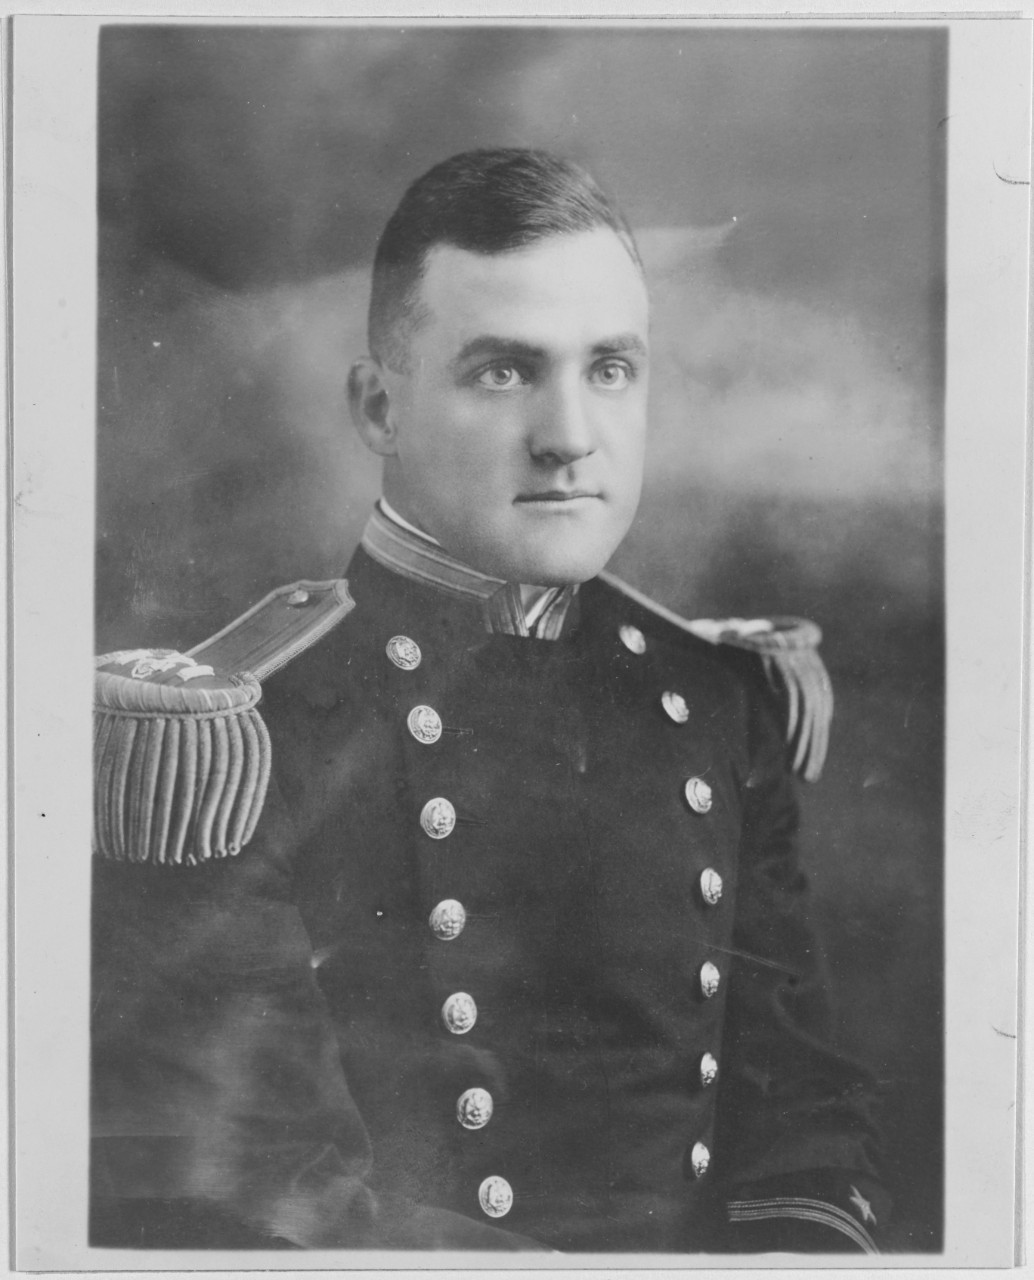 Lieutenant Commander Murphy J. Foster, USN